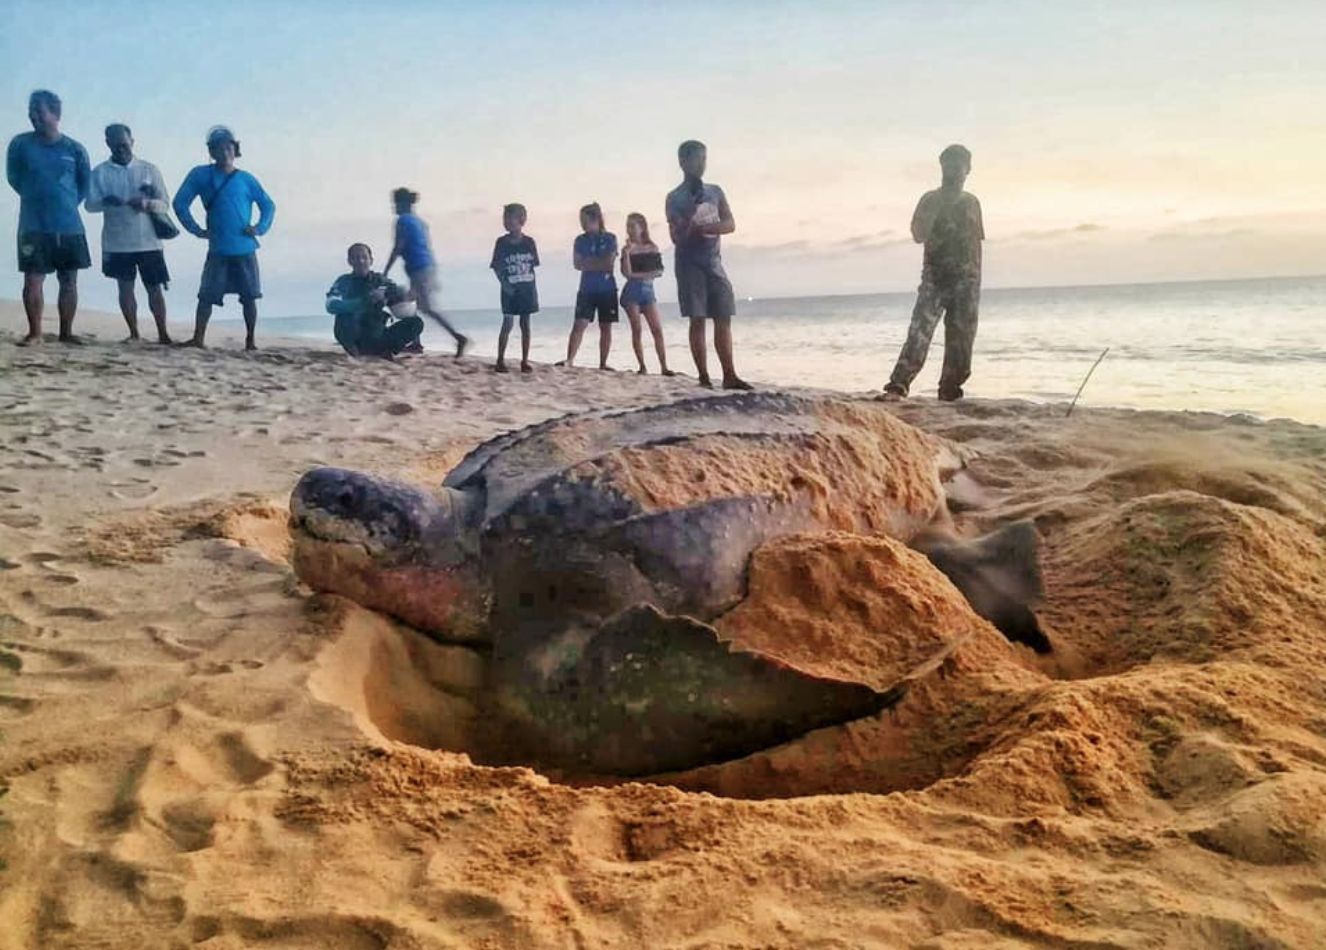 Leatherback Sea Turtles Phang Nga